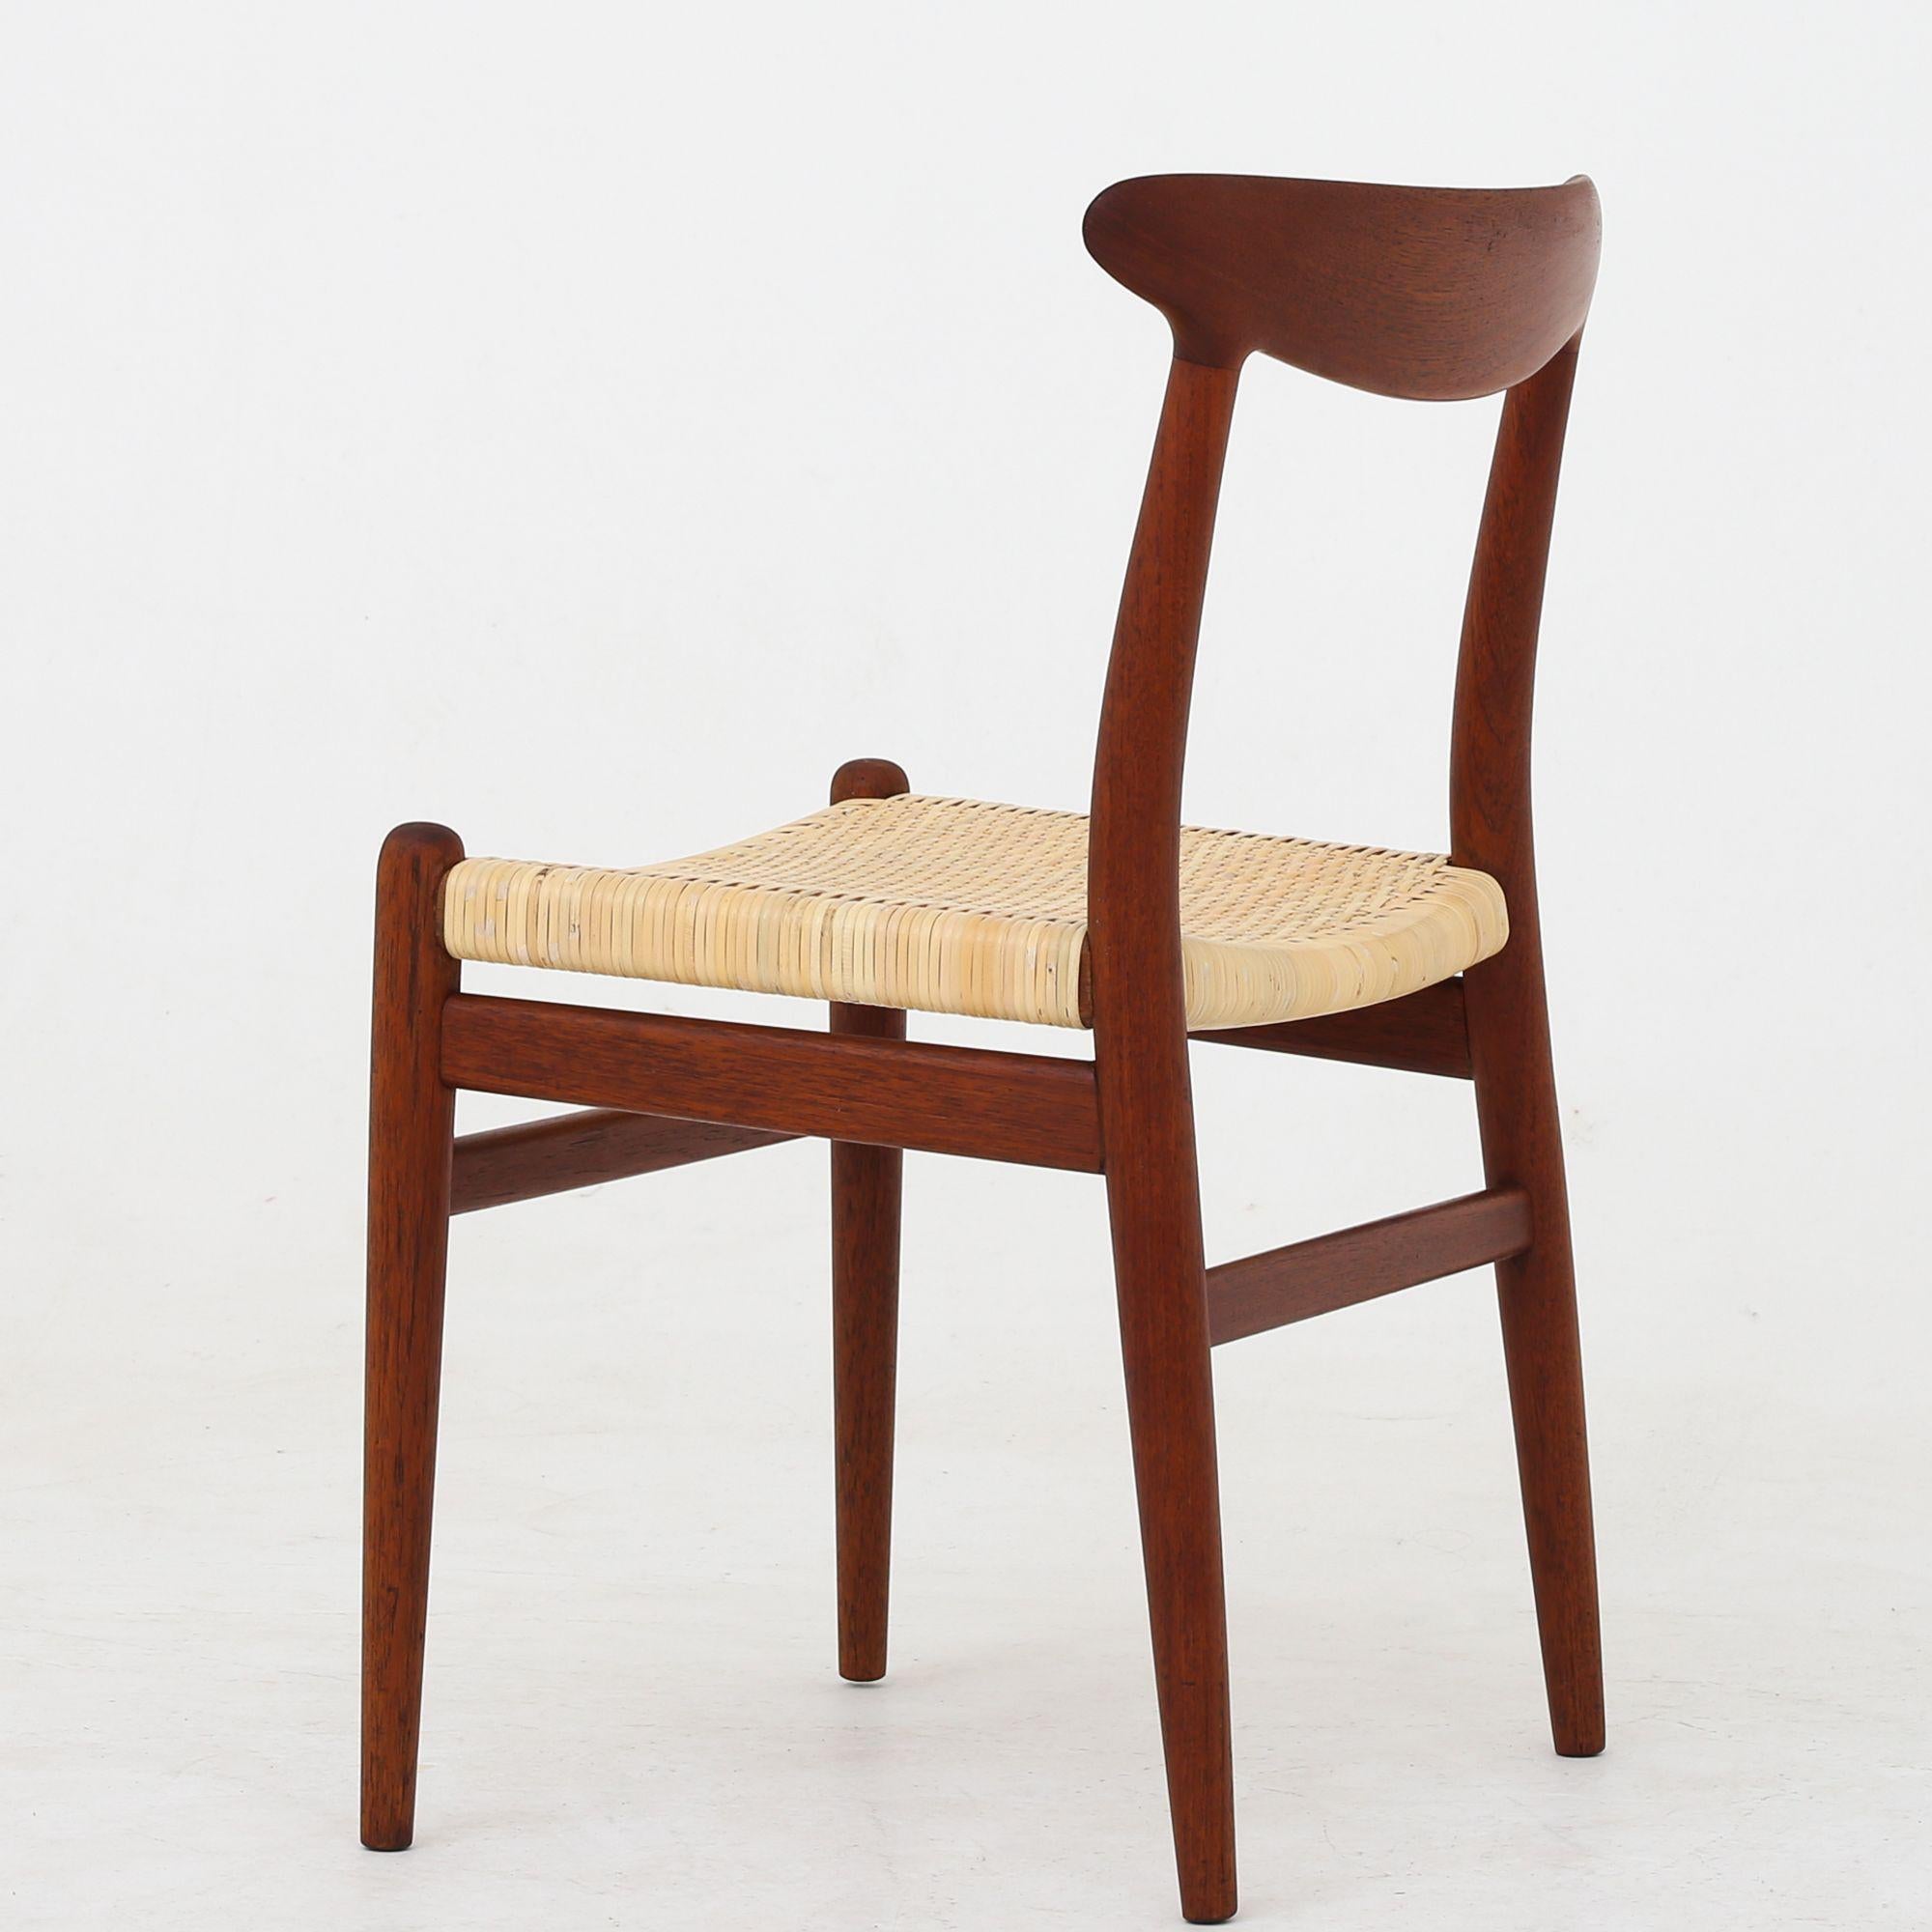 Scandinavian Modern Chair by Hans J. Wegner